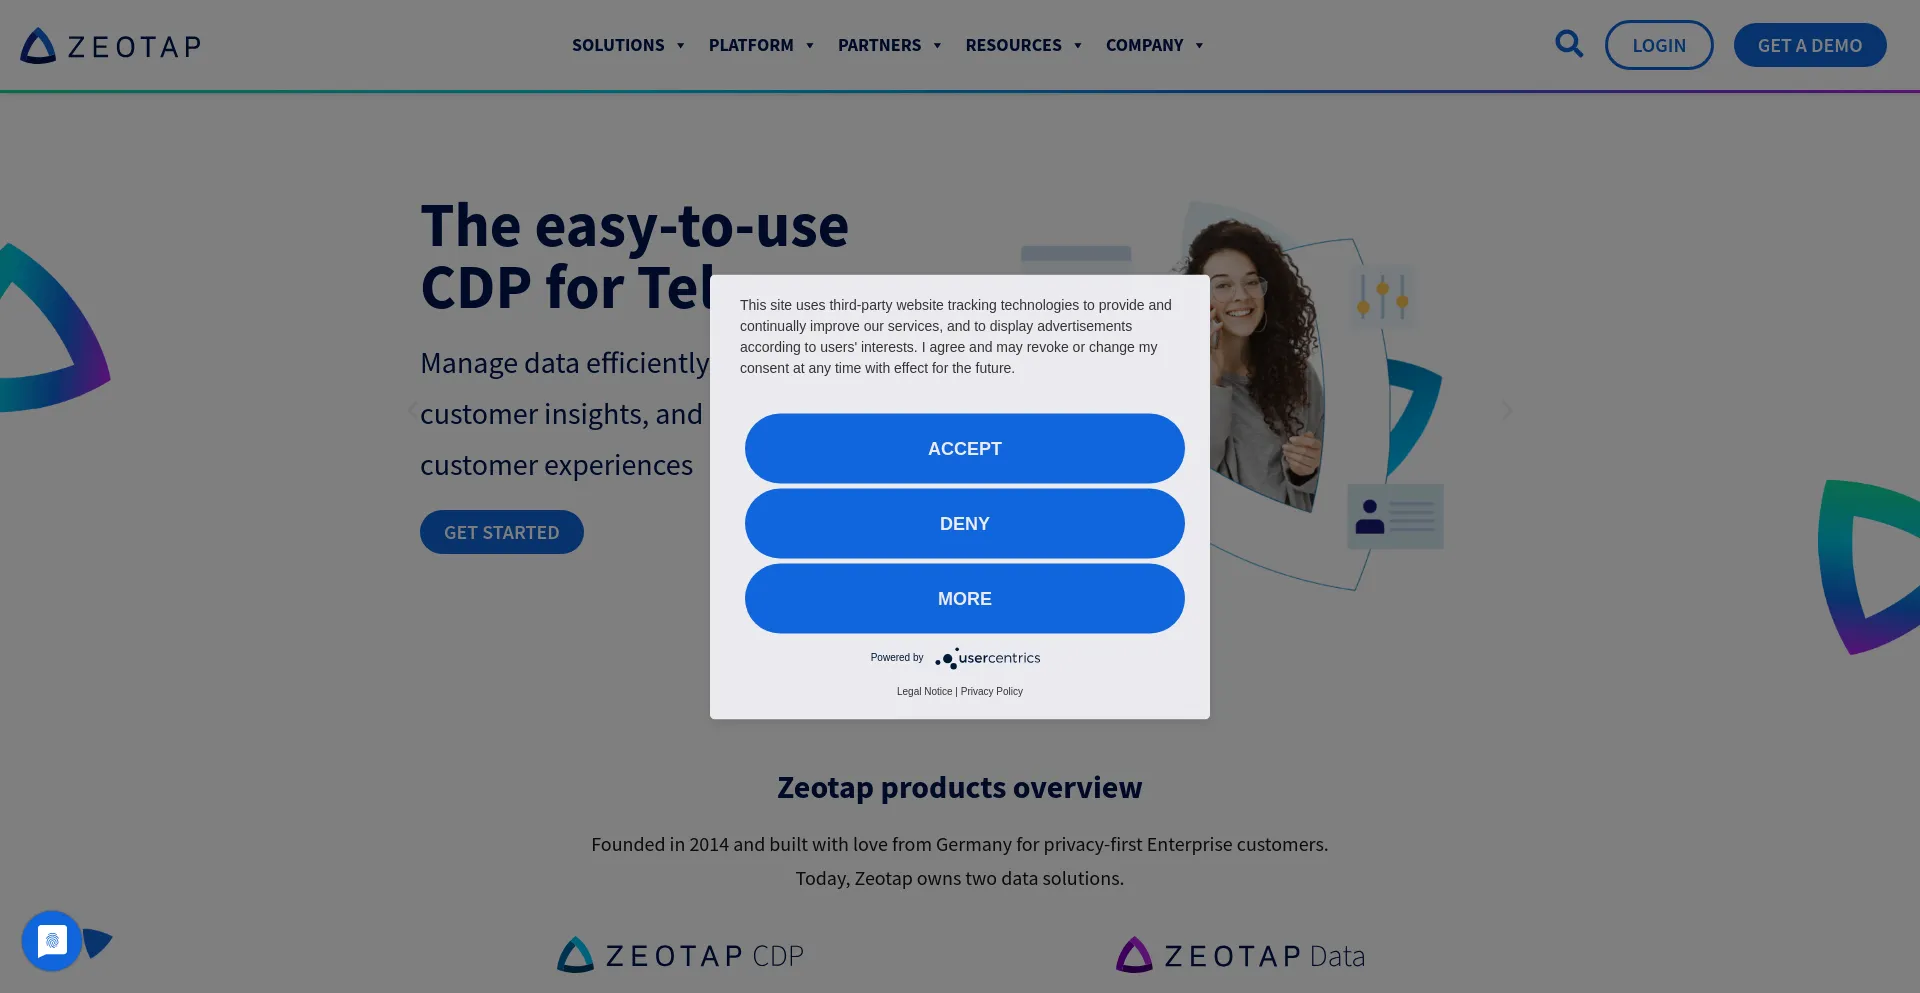 zeotap.com